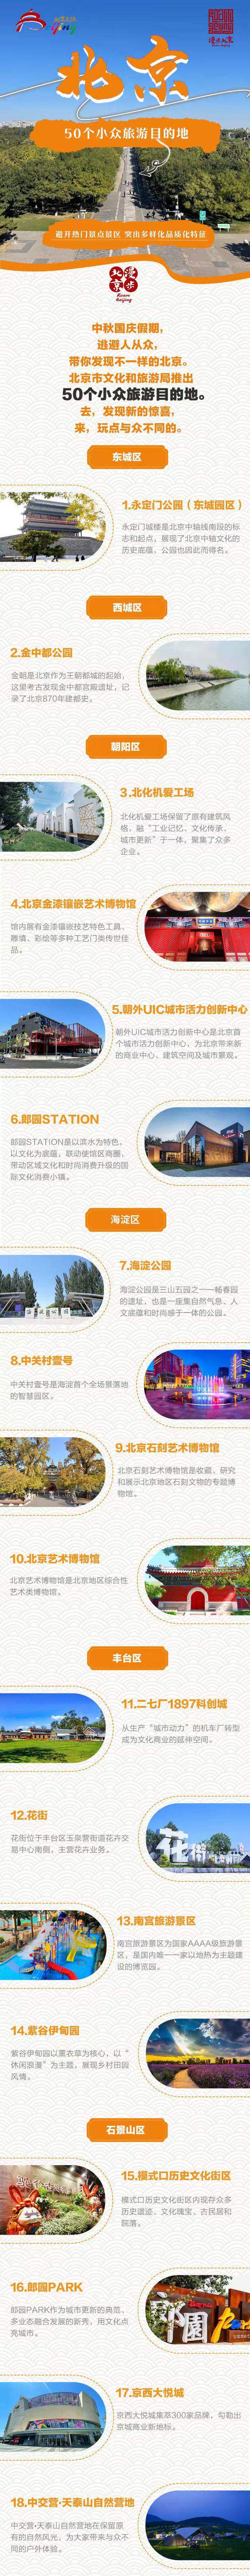 北京推出50个“小众旅游目的地”